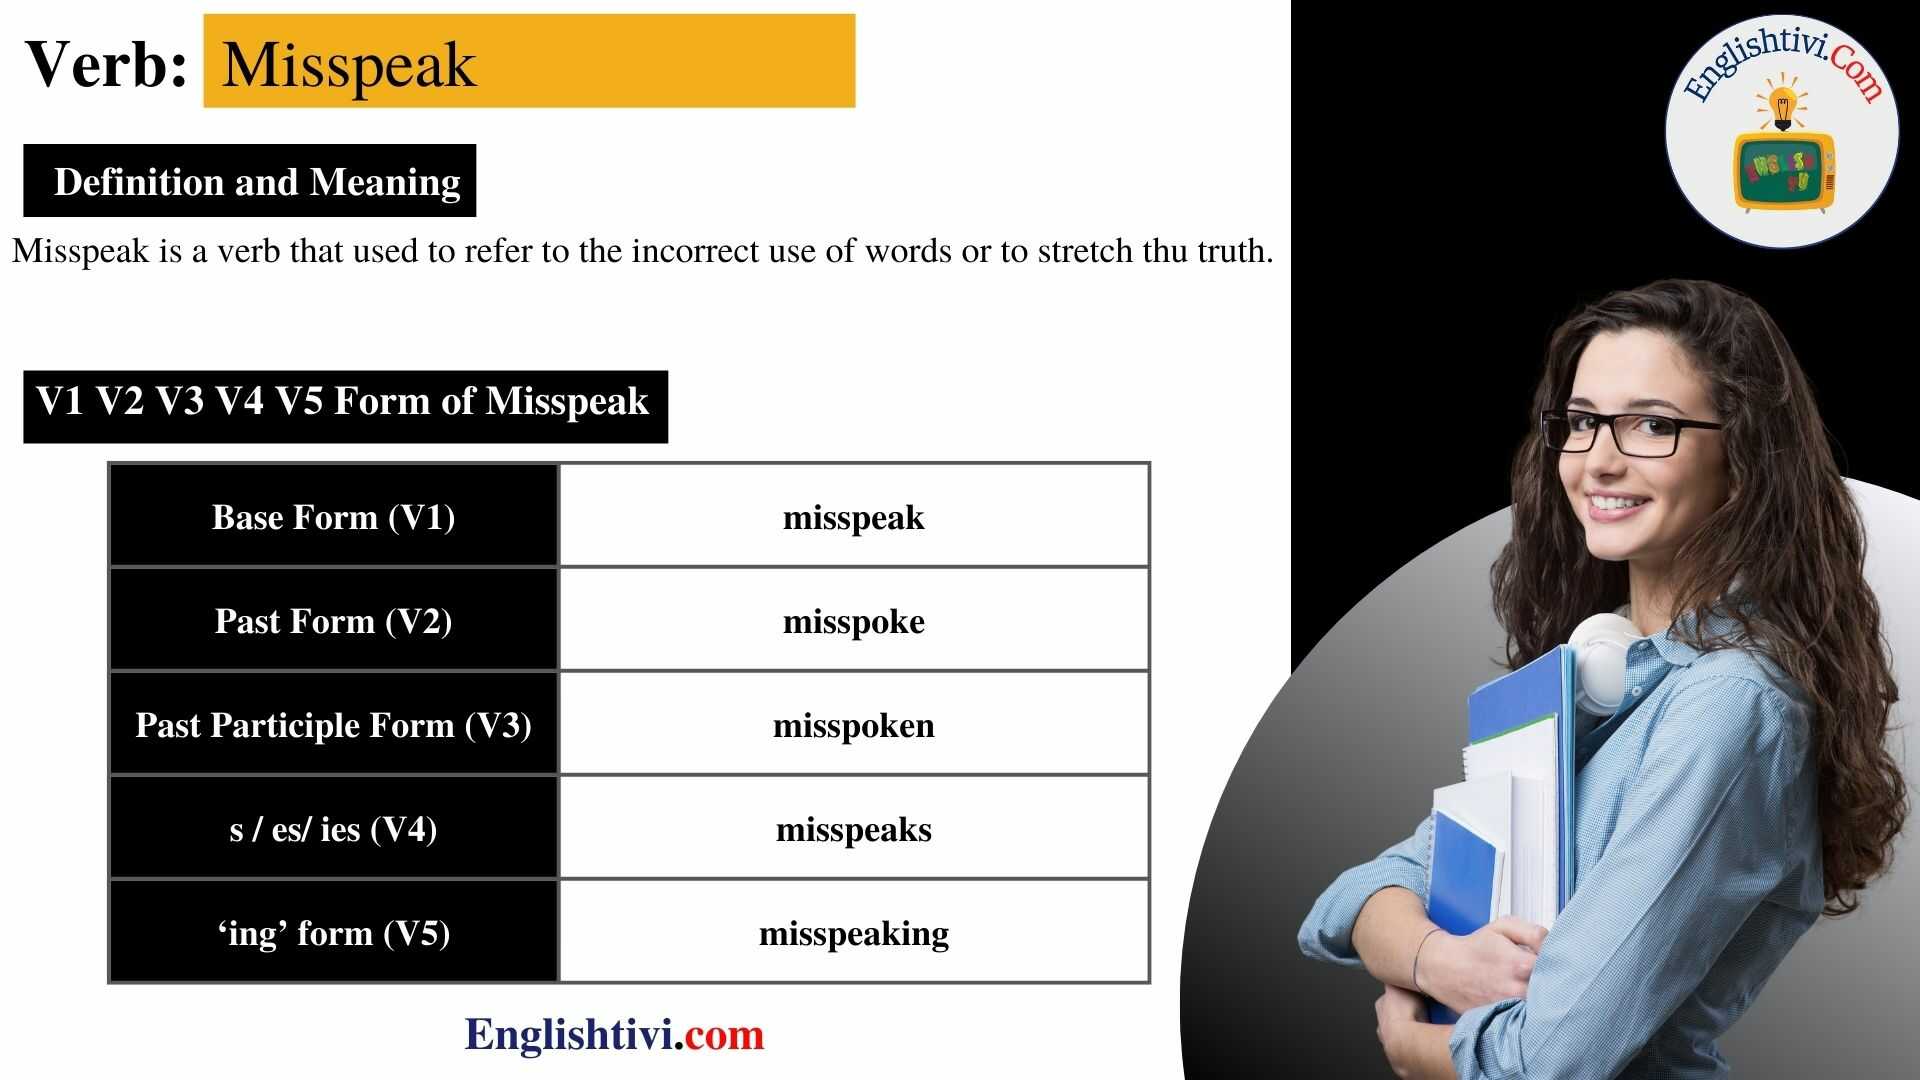 Misspeak-v1-v2-v3-v4-v5-base-form-past-simple-past-participle-form-of-Misspeak